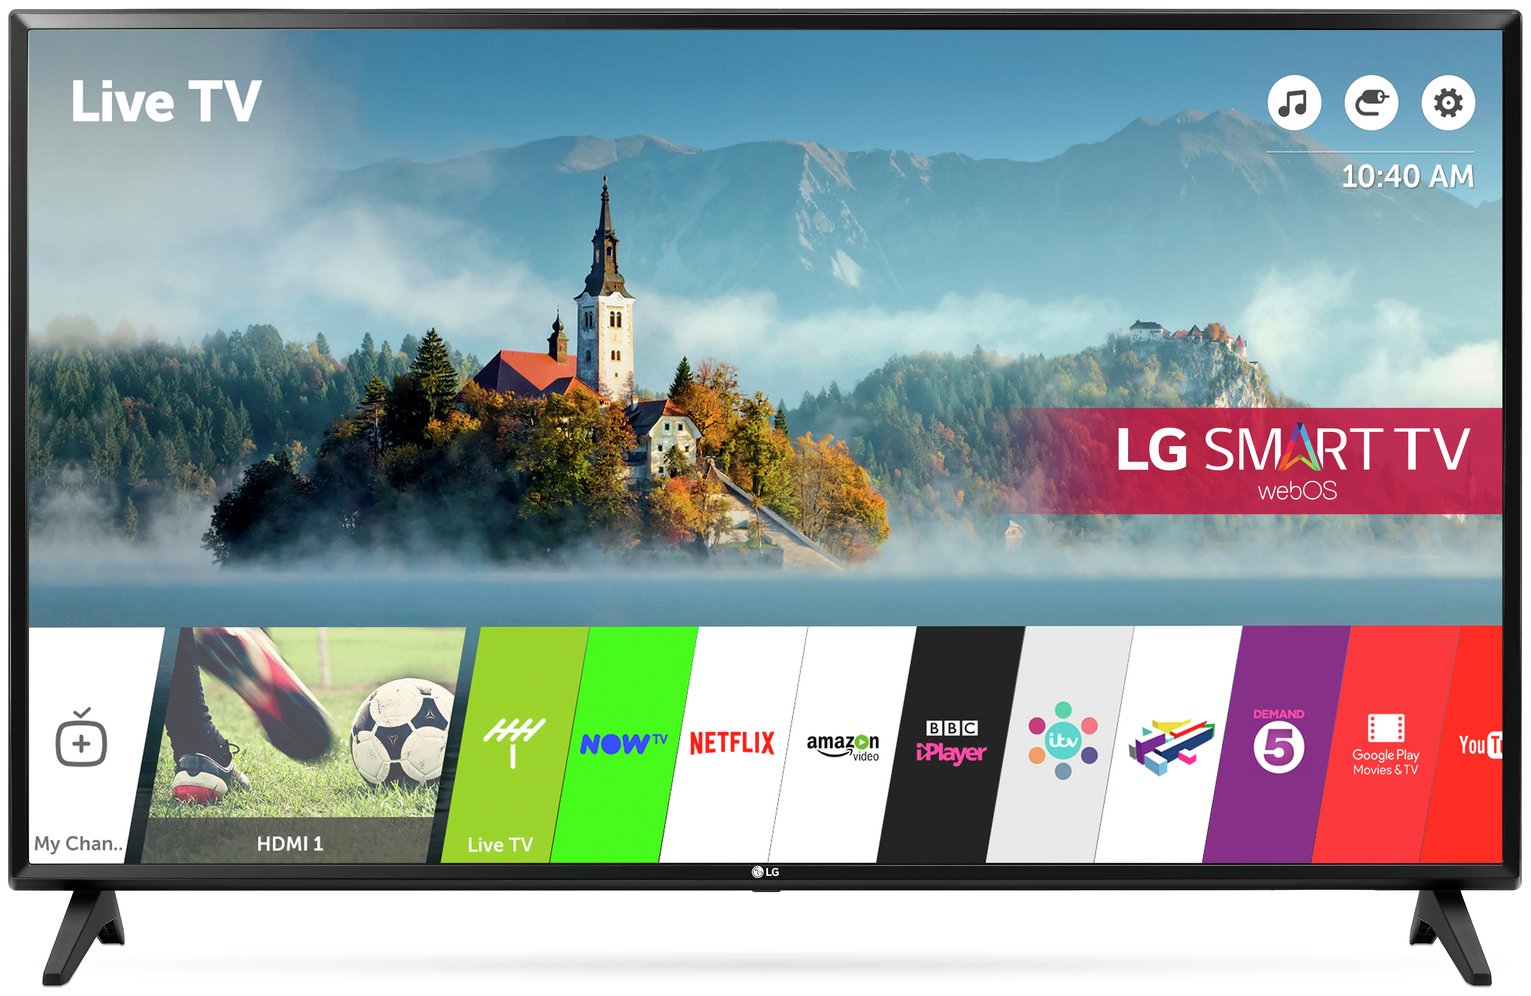 LG 49LJ594V 49 Inch Smart Full HD TV Review